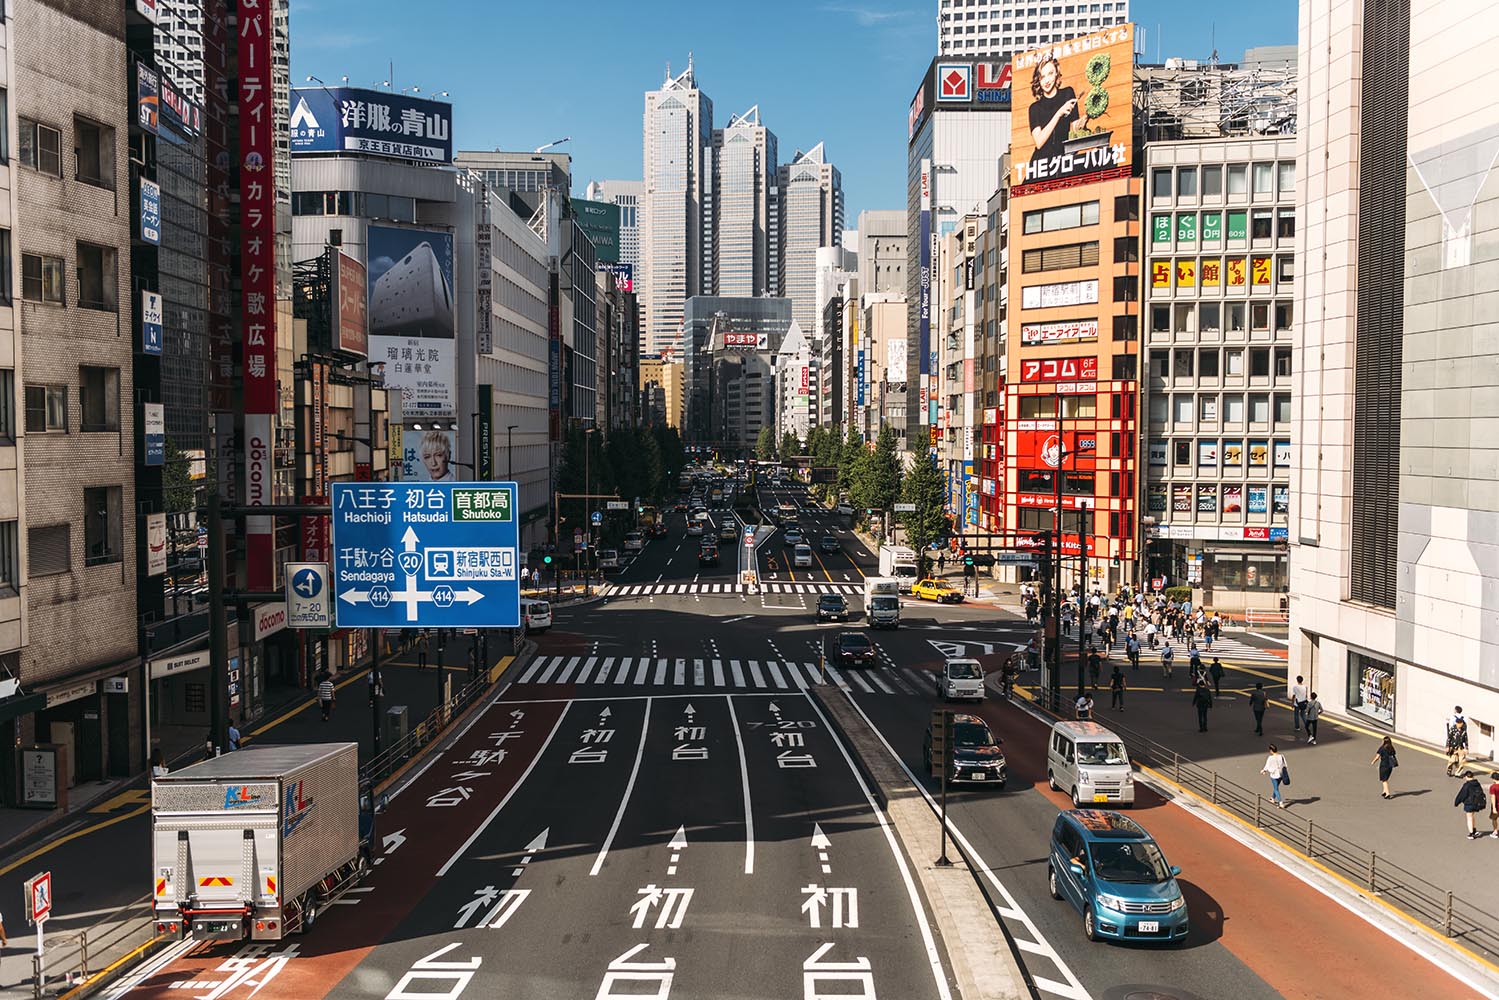 Street view in Shinjuku, Tokyo, Japan